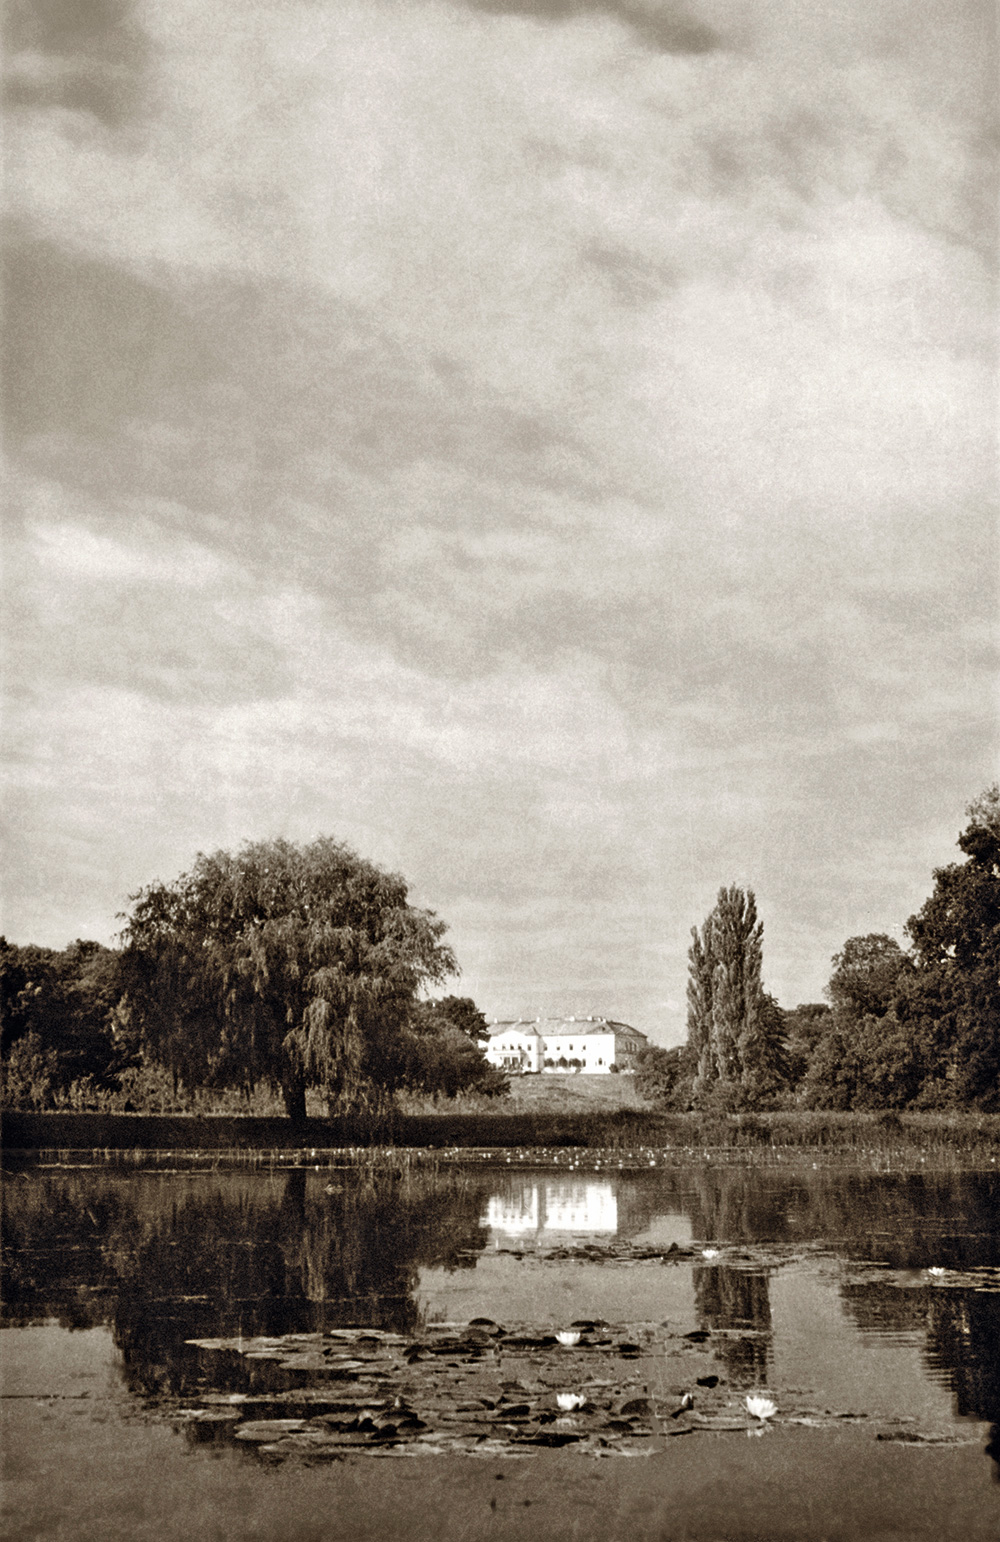 Doba, a somlóvári Erdődy-kastély a park nagy halastava felől. Kopernitzky István felvétele, 1968 körül. © Alföldy Gábor kerttörténeti gyűjteményéből.